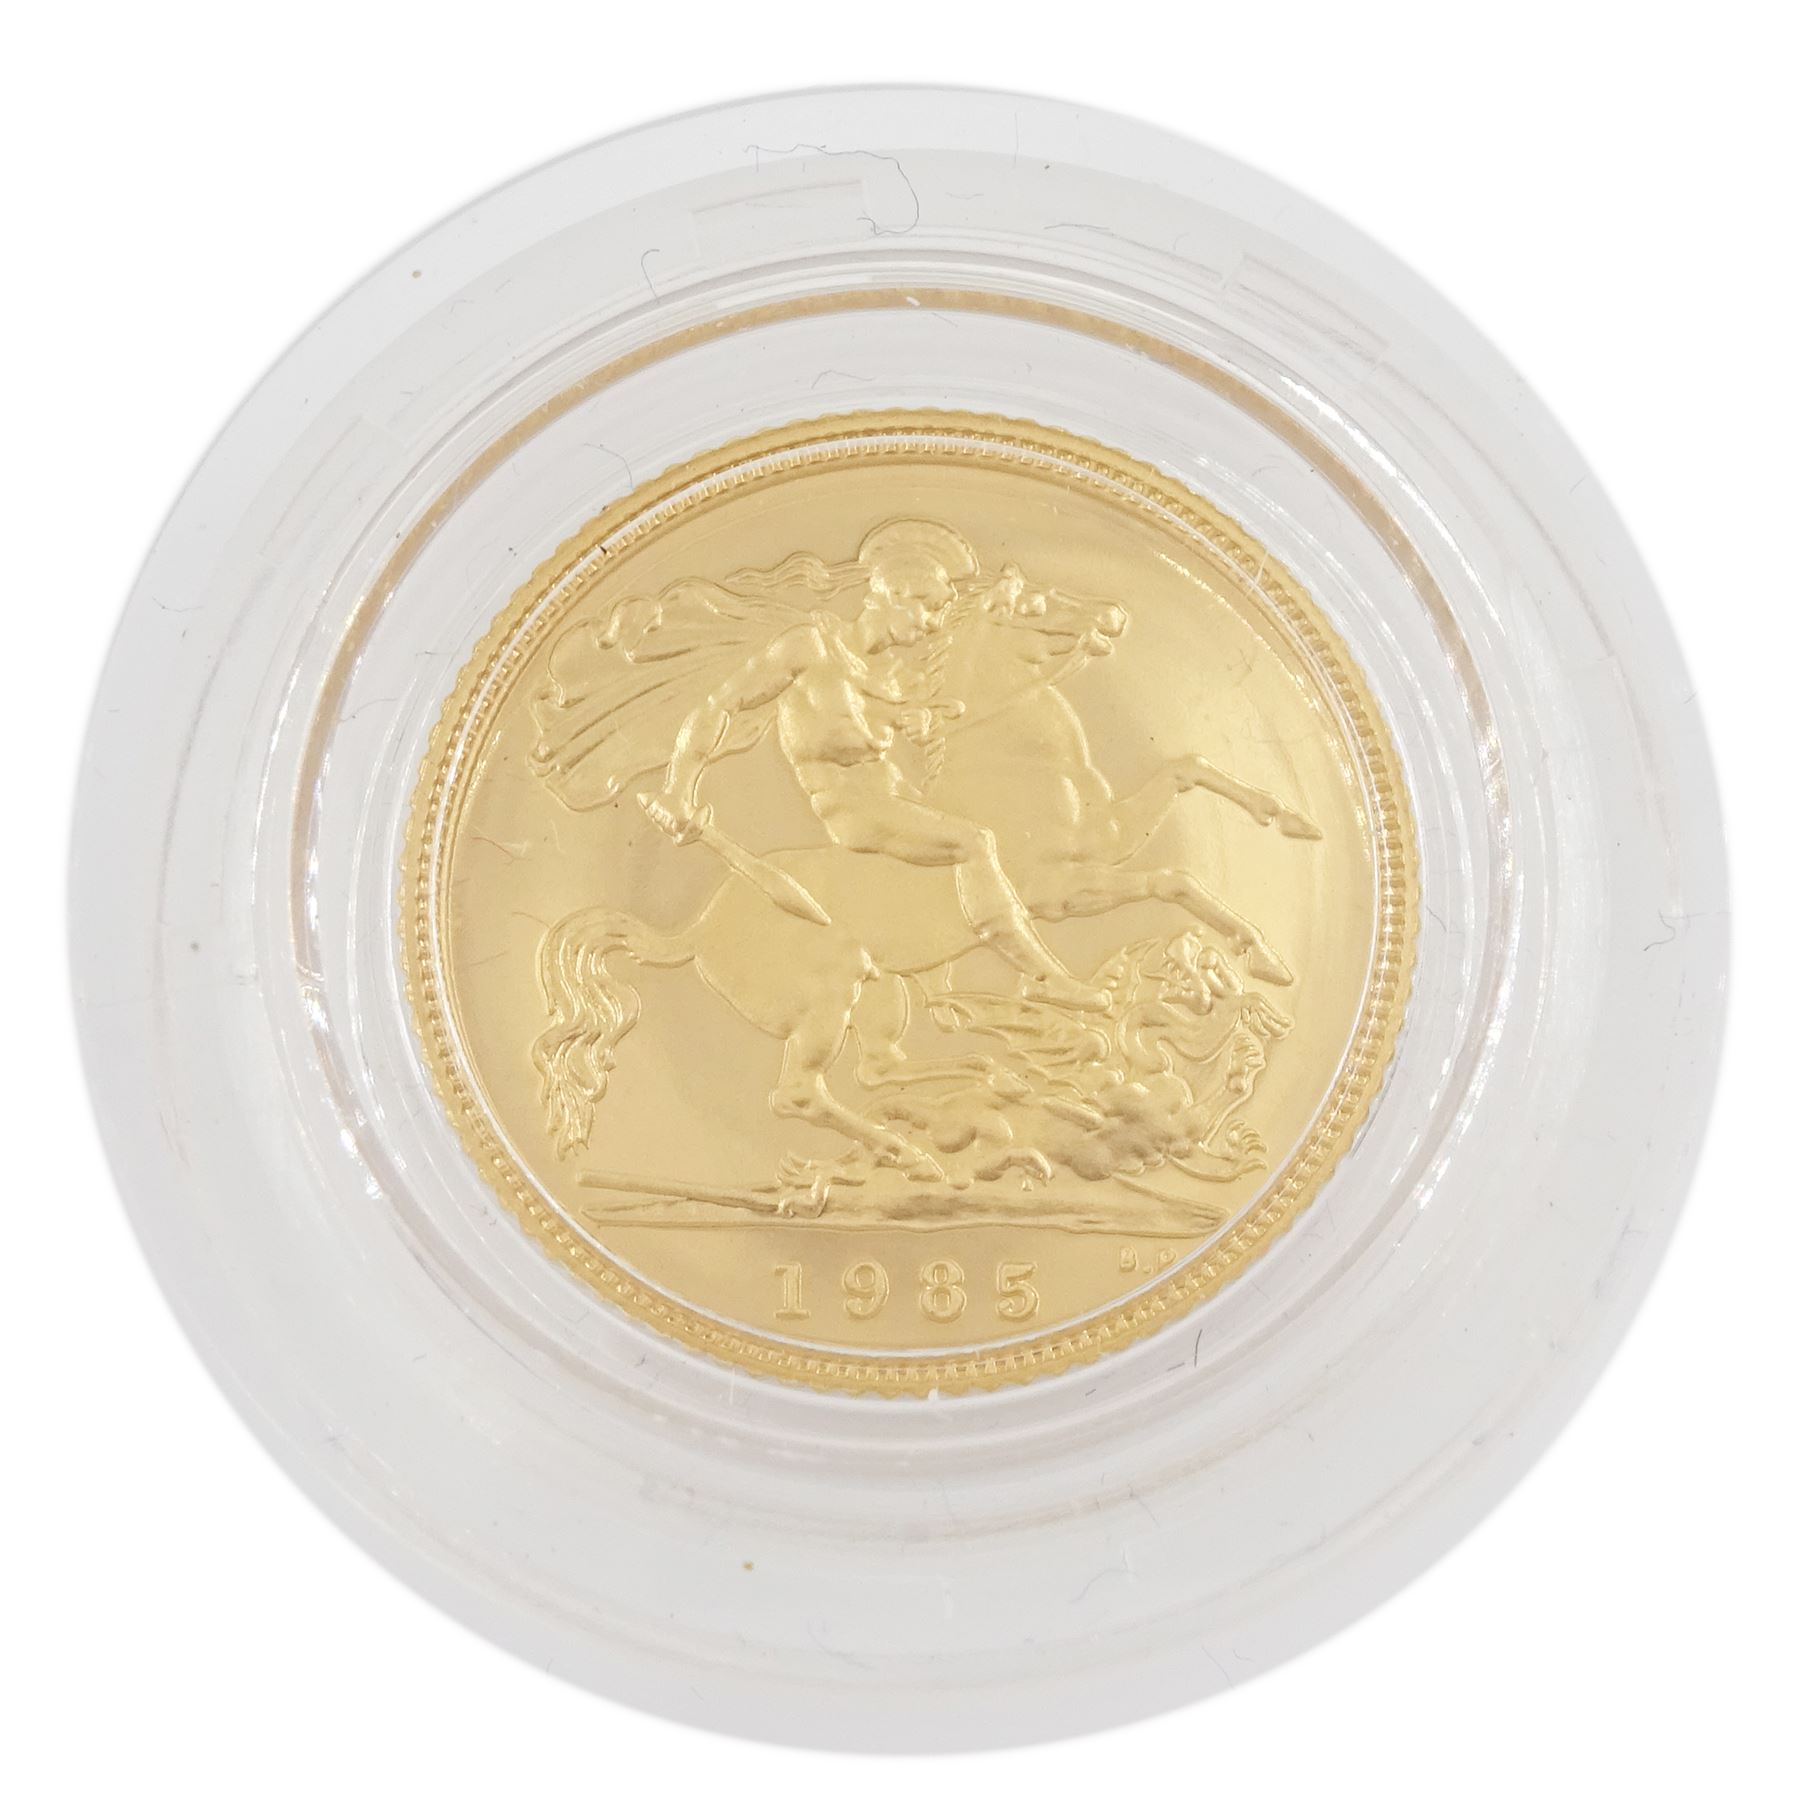 Queen Elizabeth II 1985 gold proof half sovereign coin - Image 2 of 3